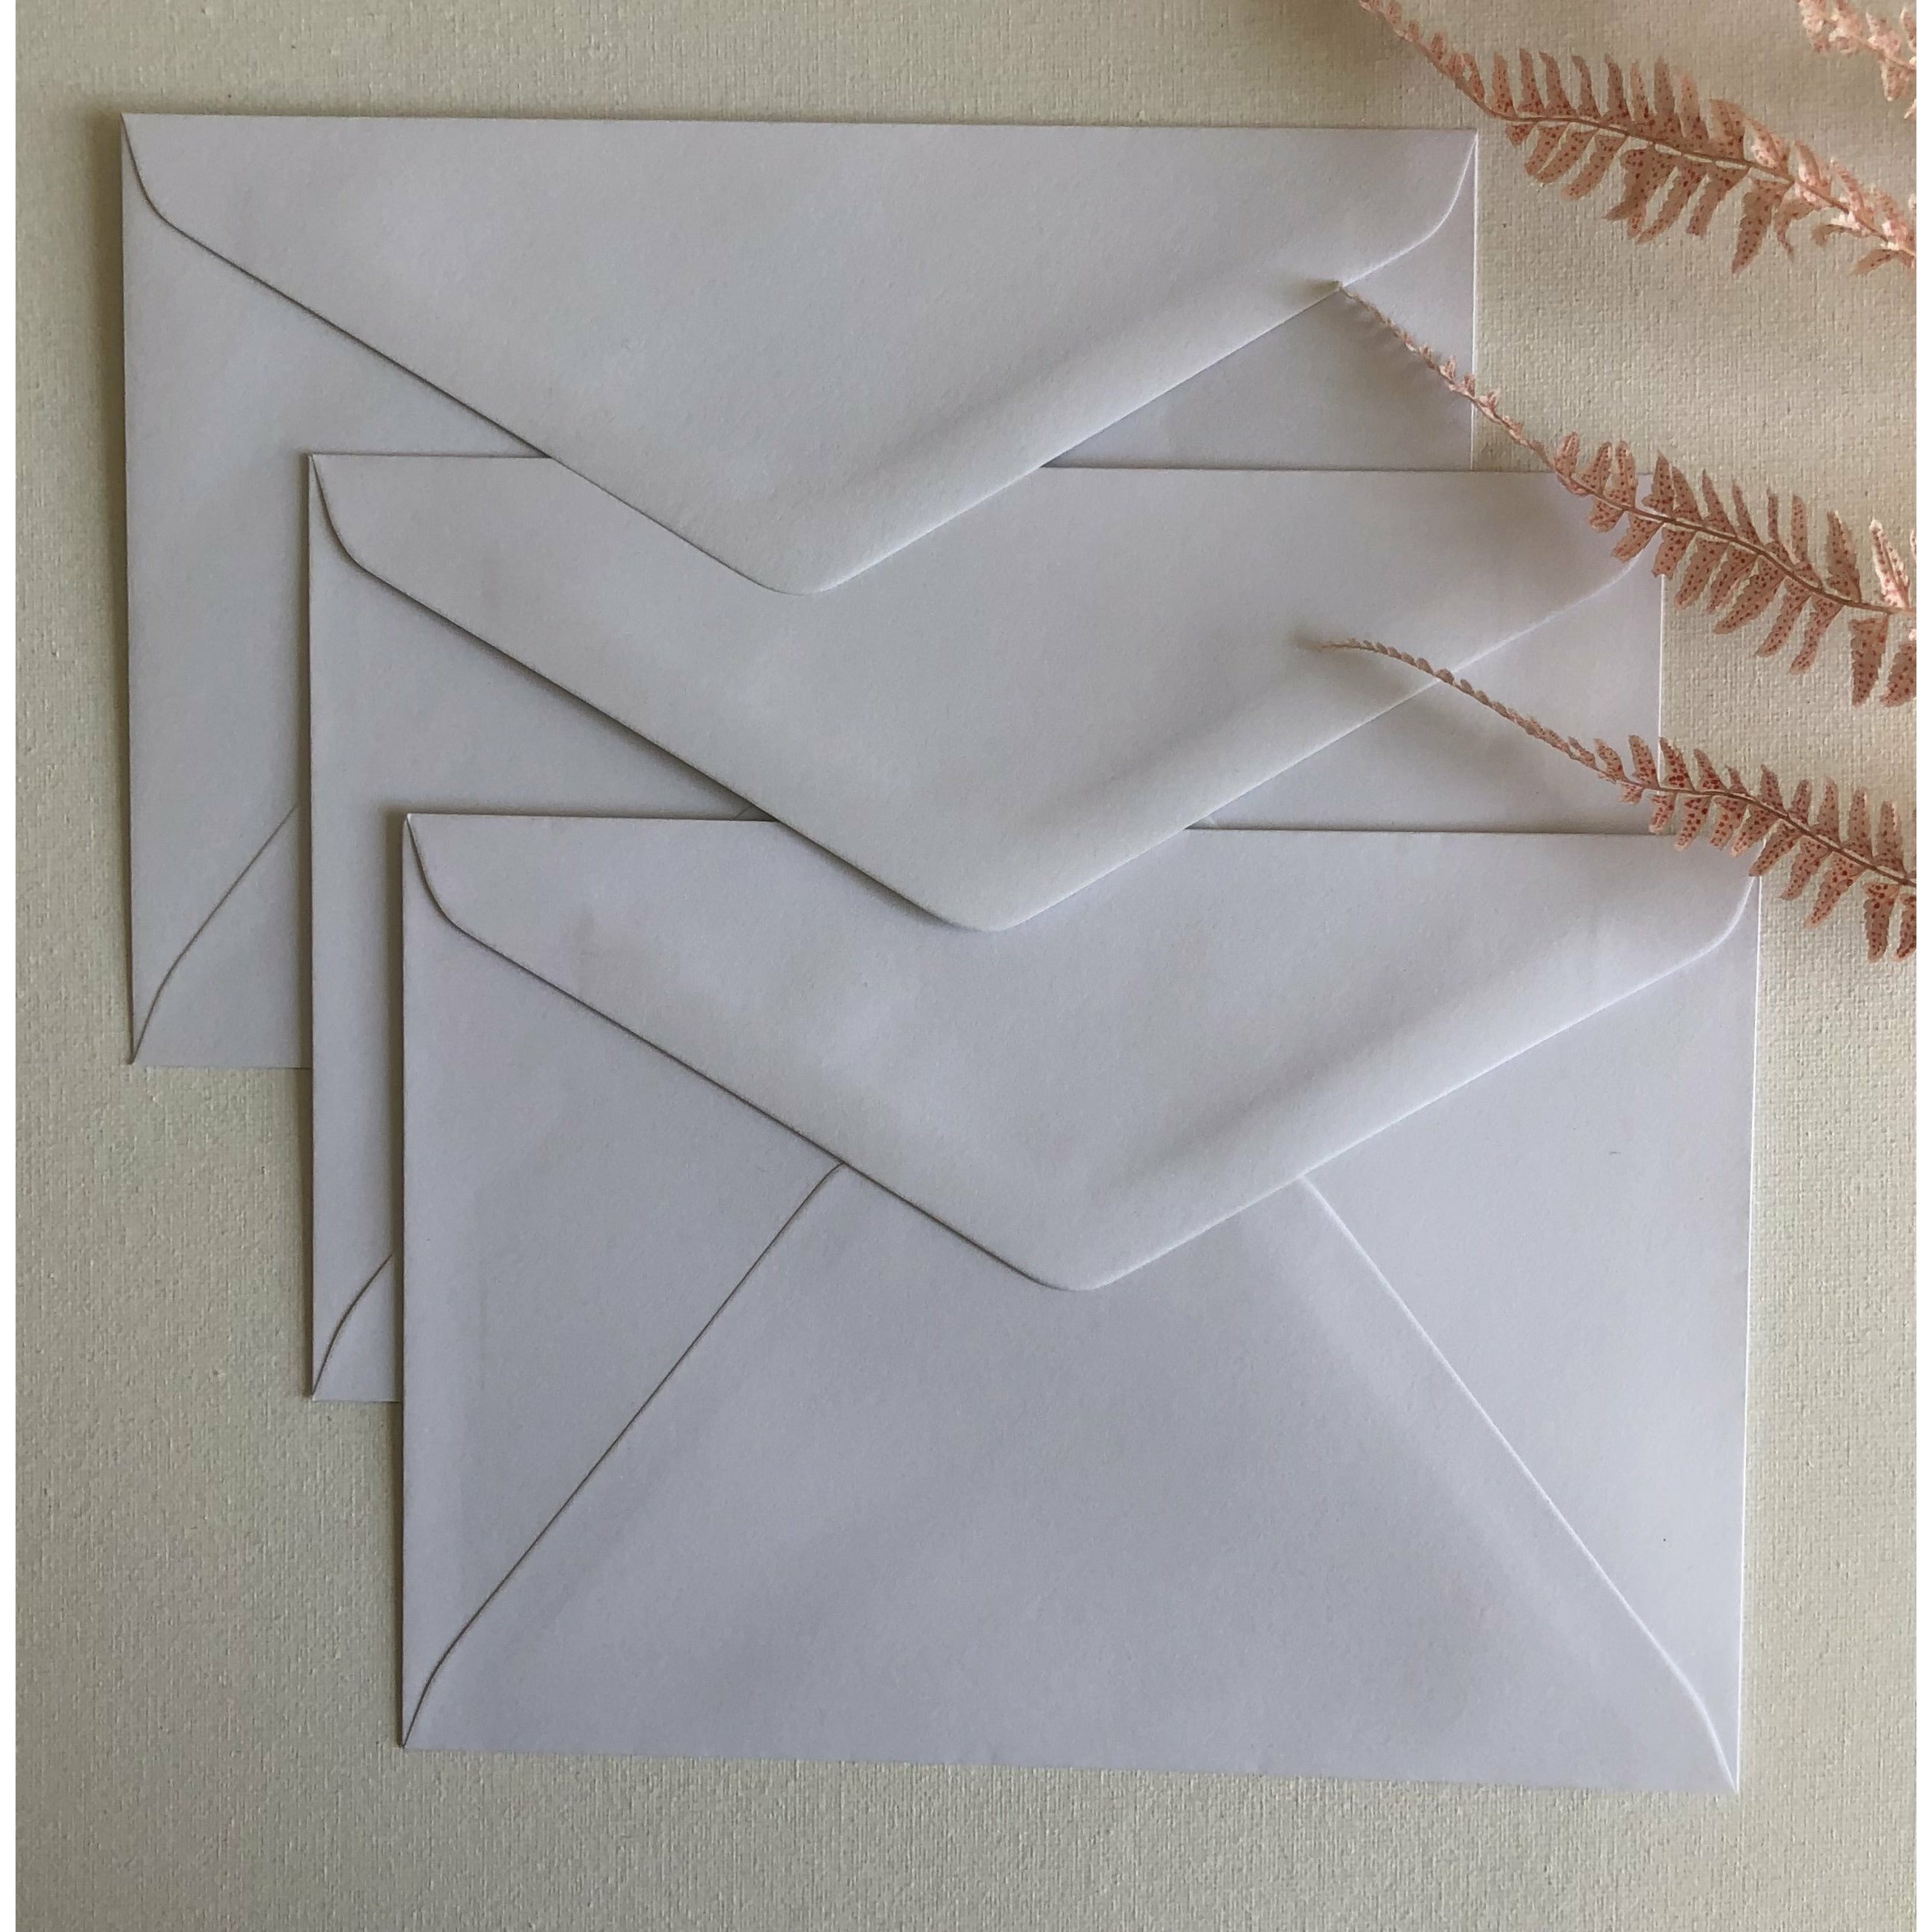 Enveloppes colorées - Crème (Nacré)~162 x 229 mm C5